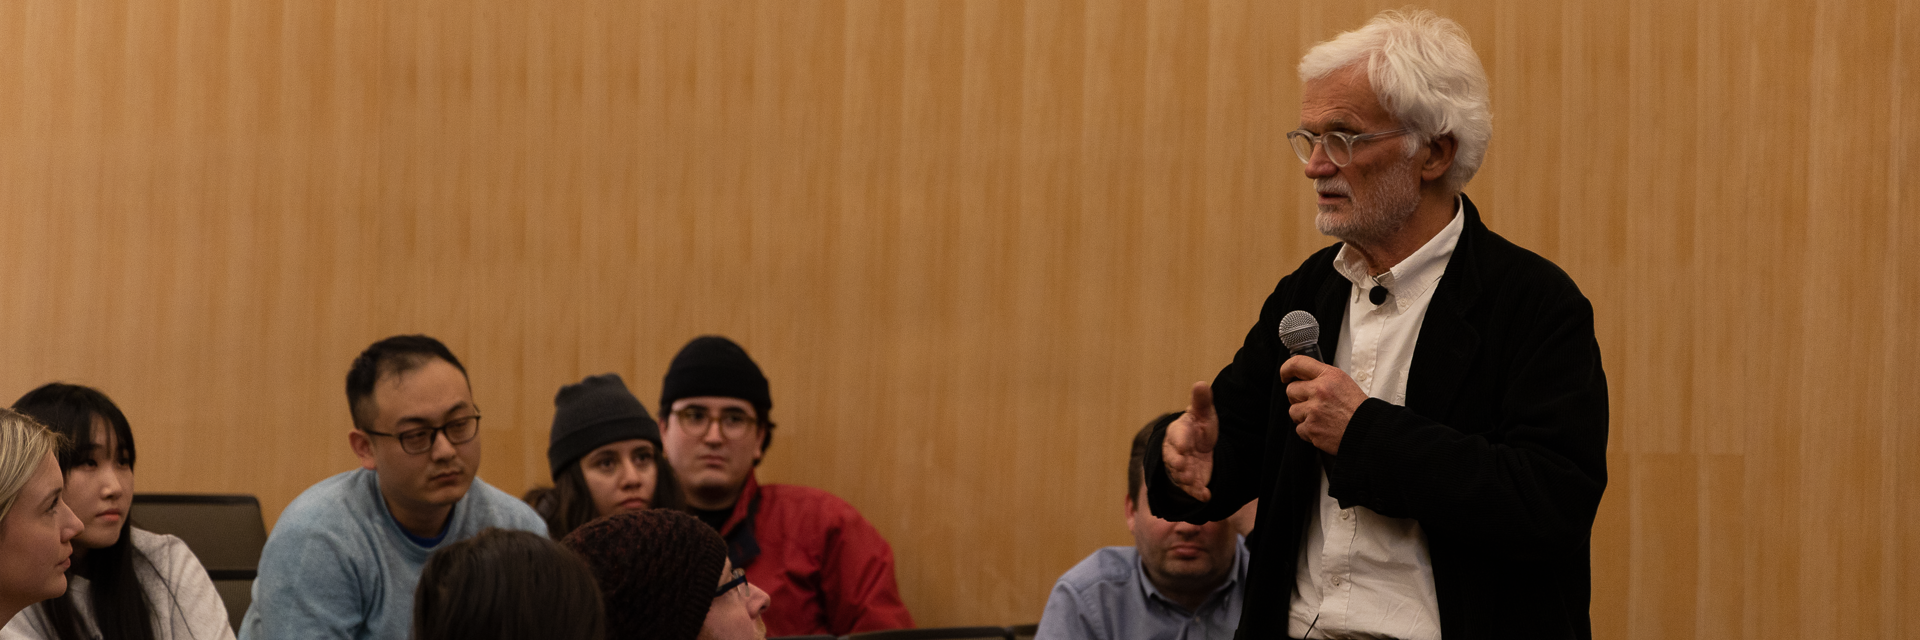 Ezio Manzini speaking to students in an auditorium